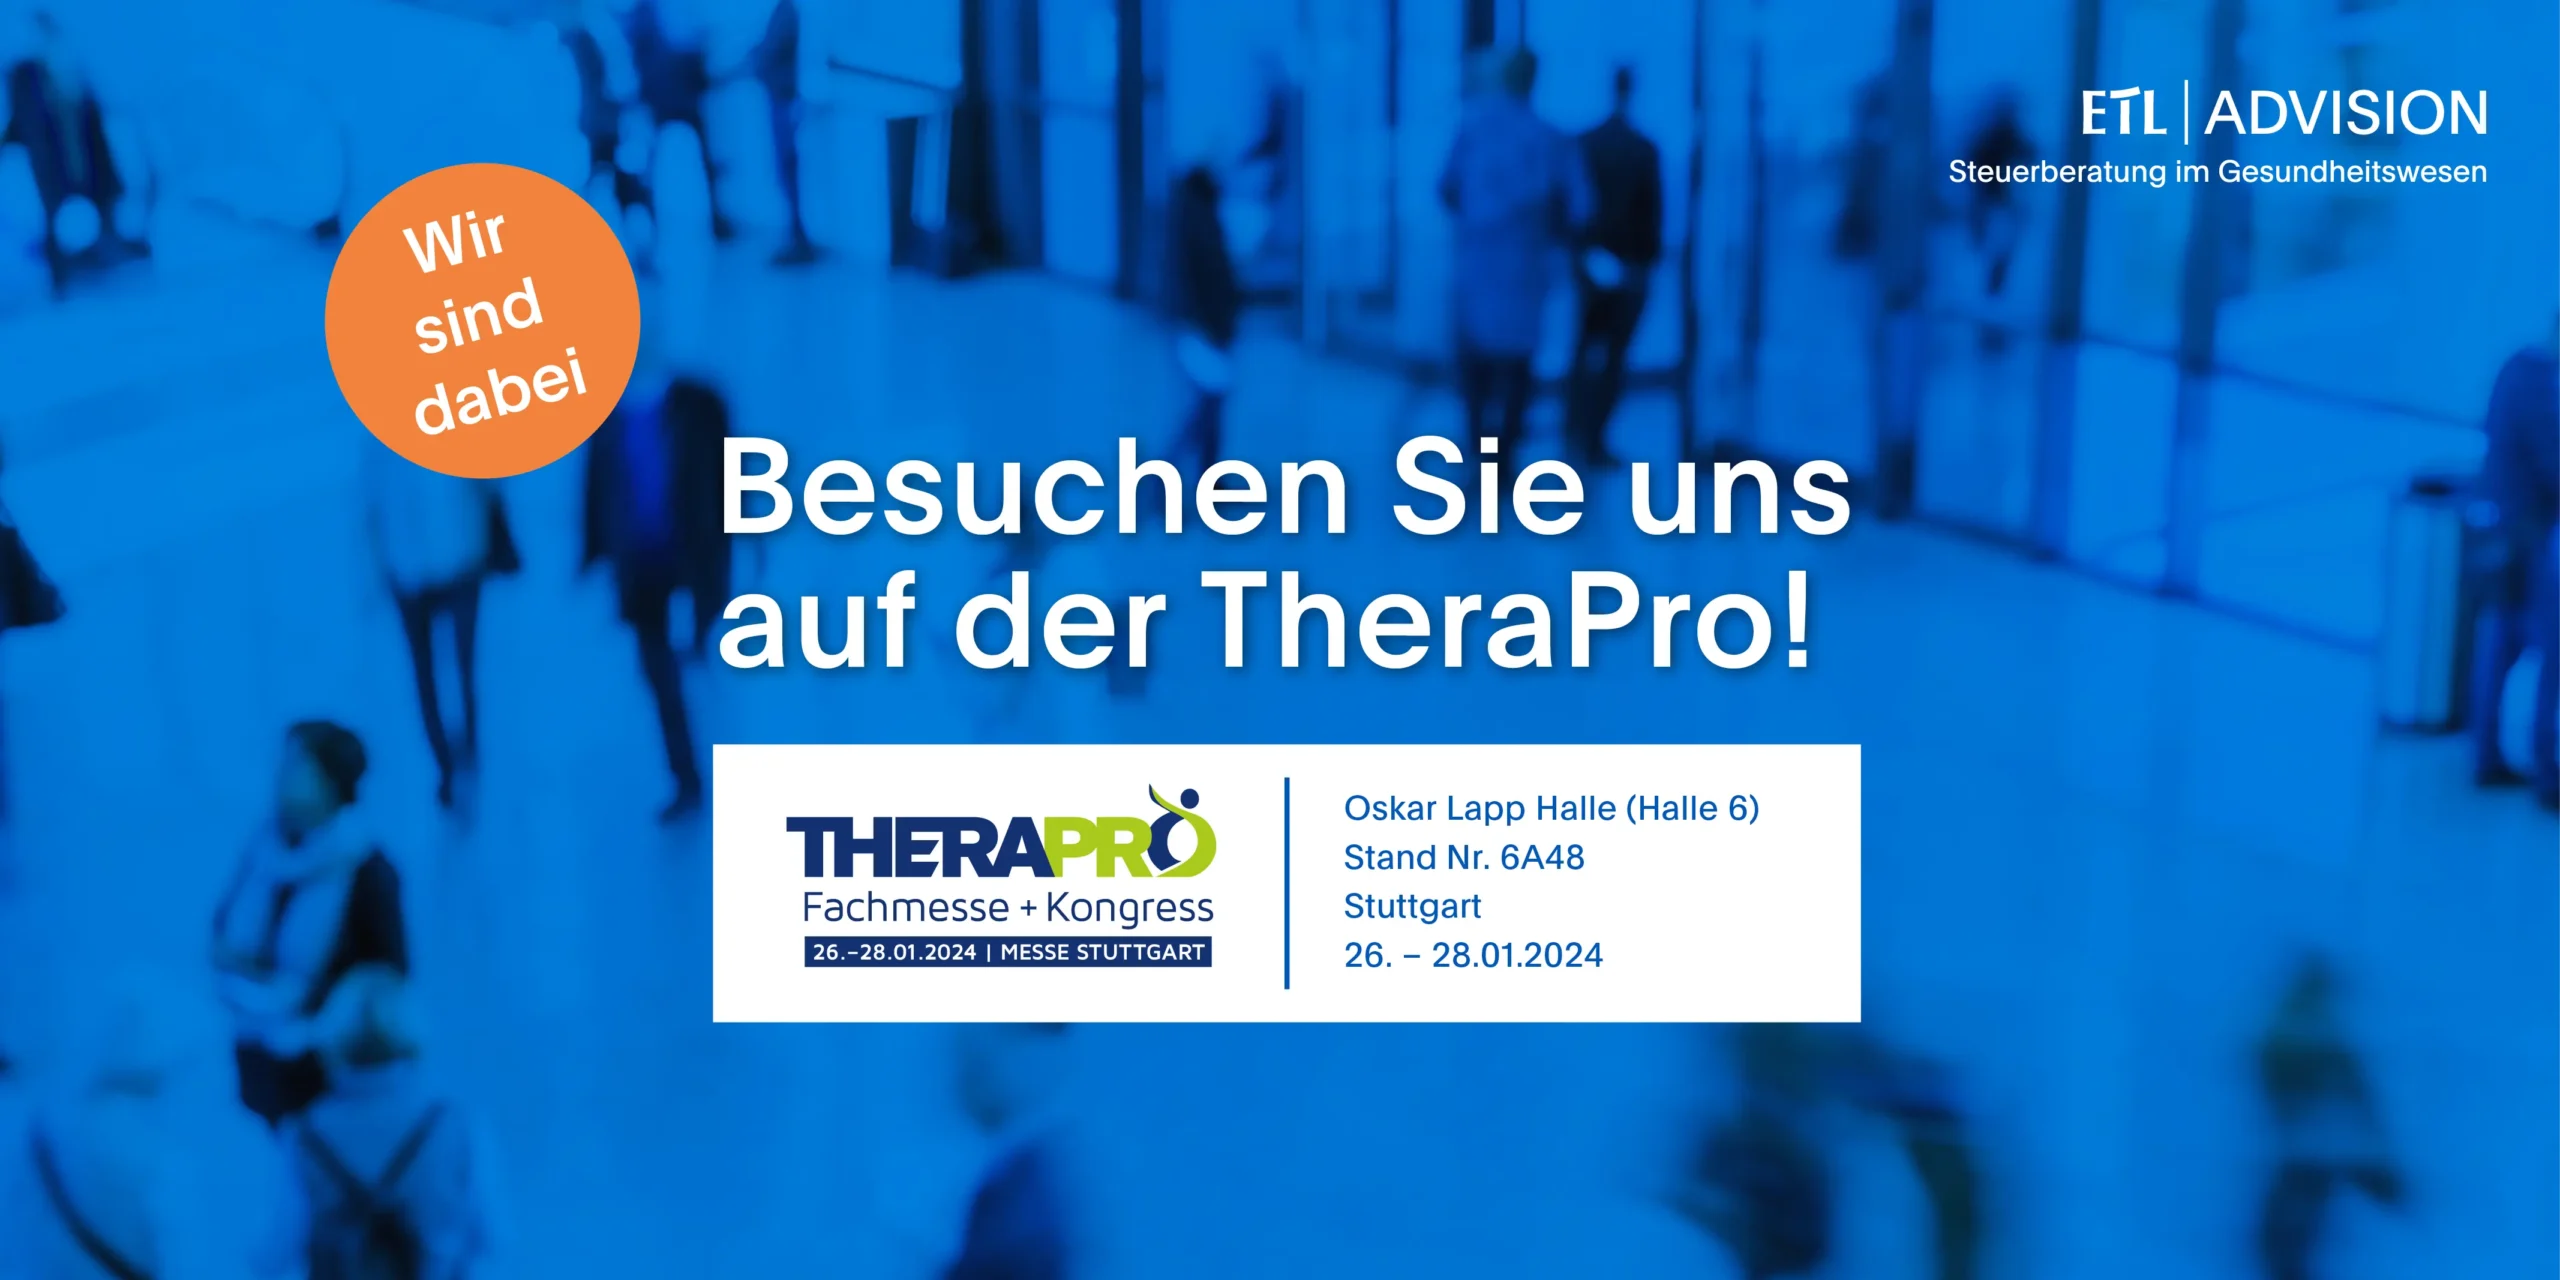 ETL ADVISION auf der Messe TheraPro 2024 in Stuttgart